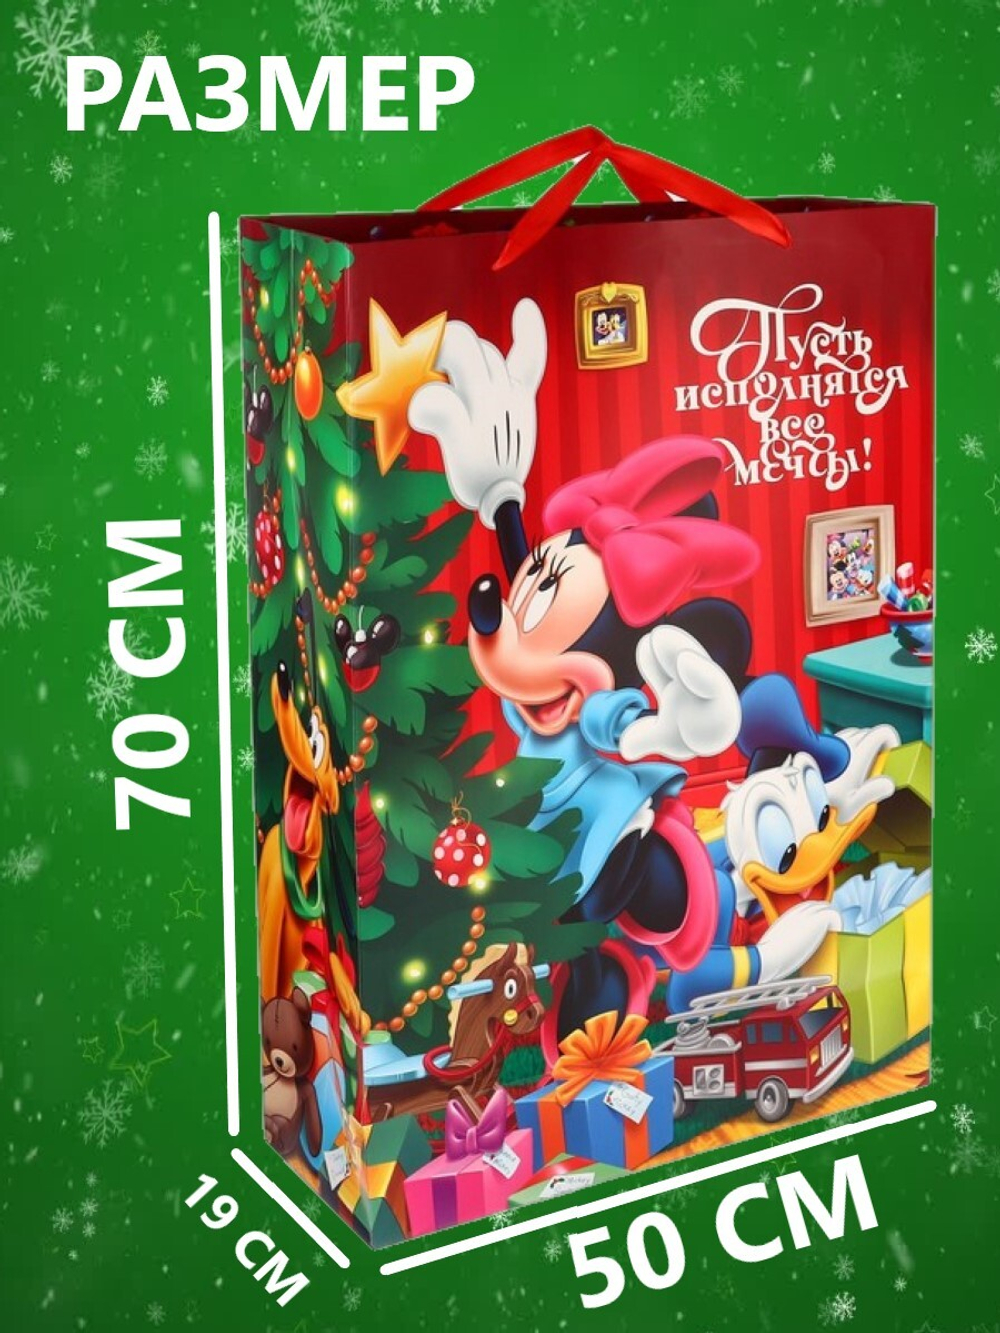 Пакет подарочный новогодний 50*70*19см "Сказочного Нового года! Микки Маус и его друзья"